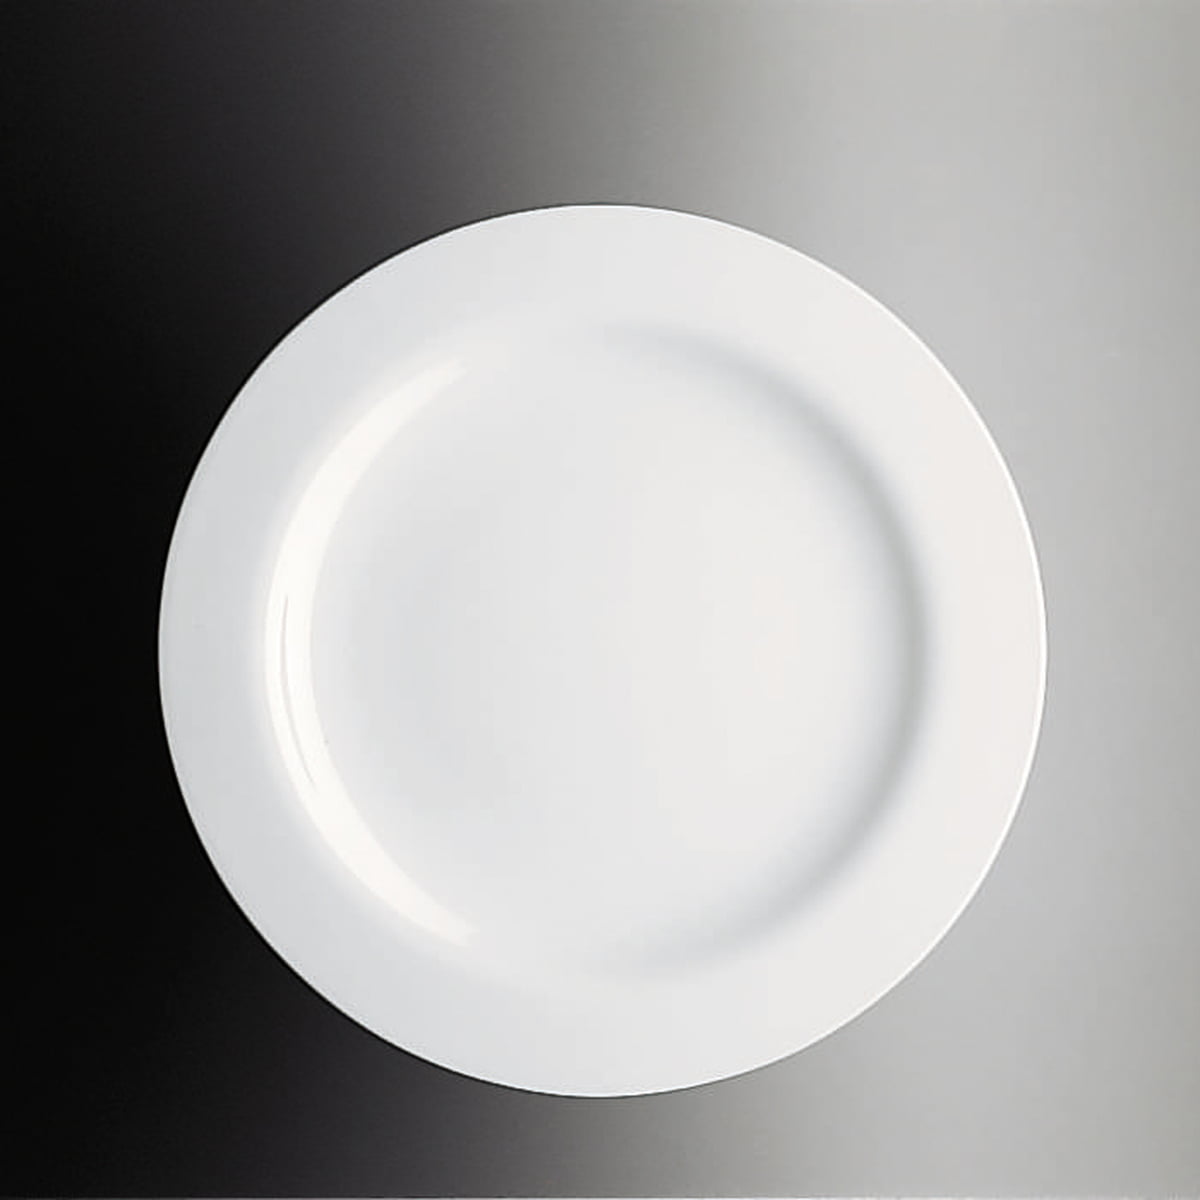 Dinner Plate White Moon